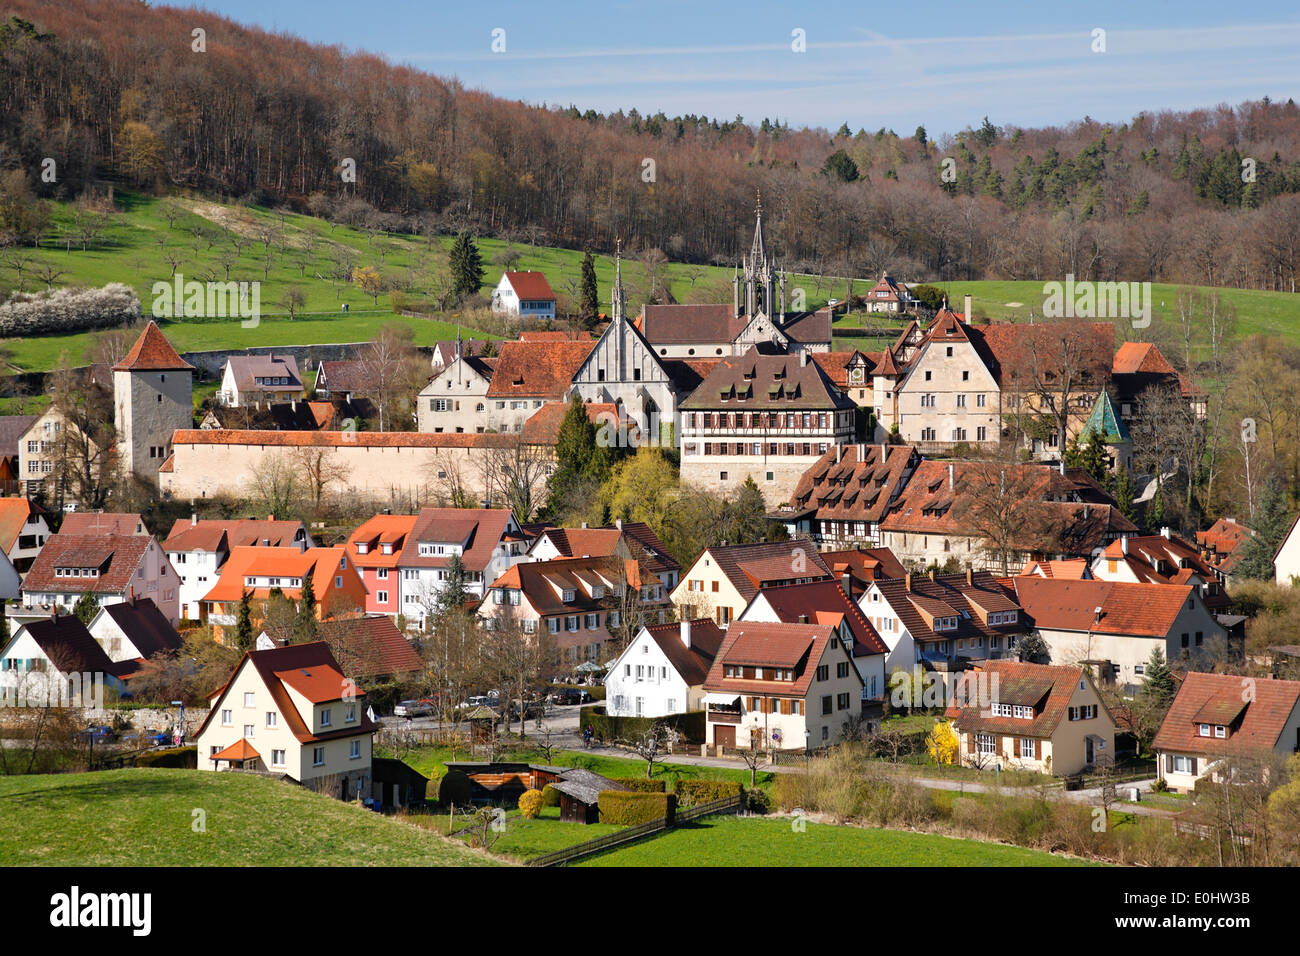 Deutschland, Baden-Württemberg, Kloster Bebenhausen, Dorf, Häuser Stock Photo